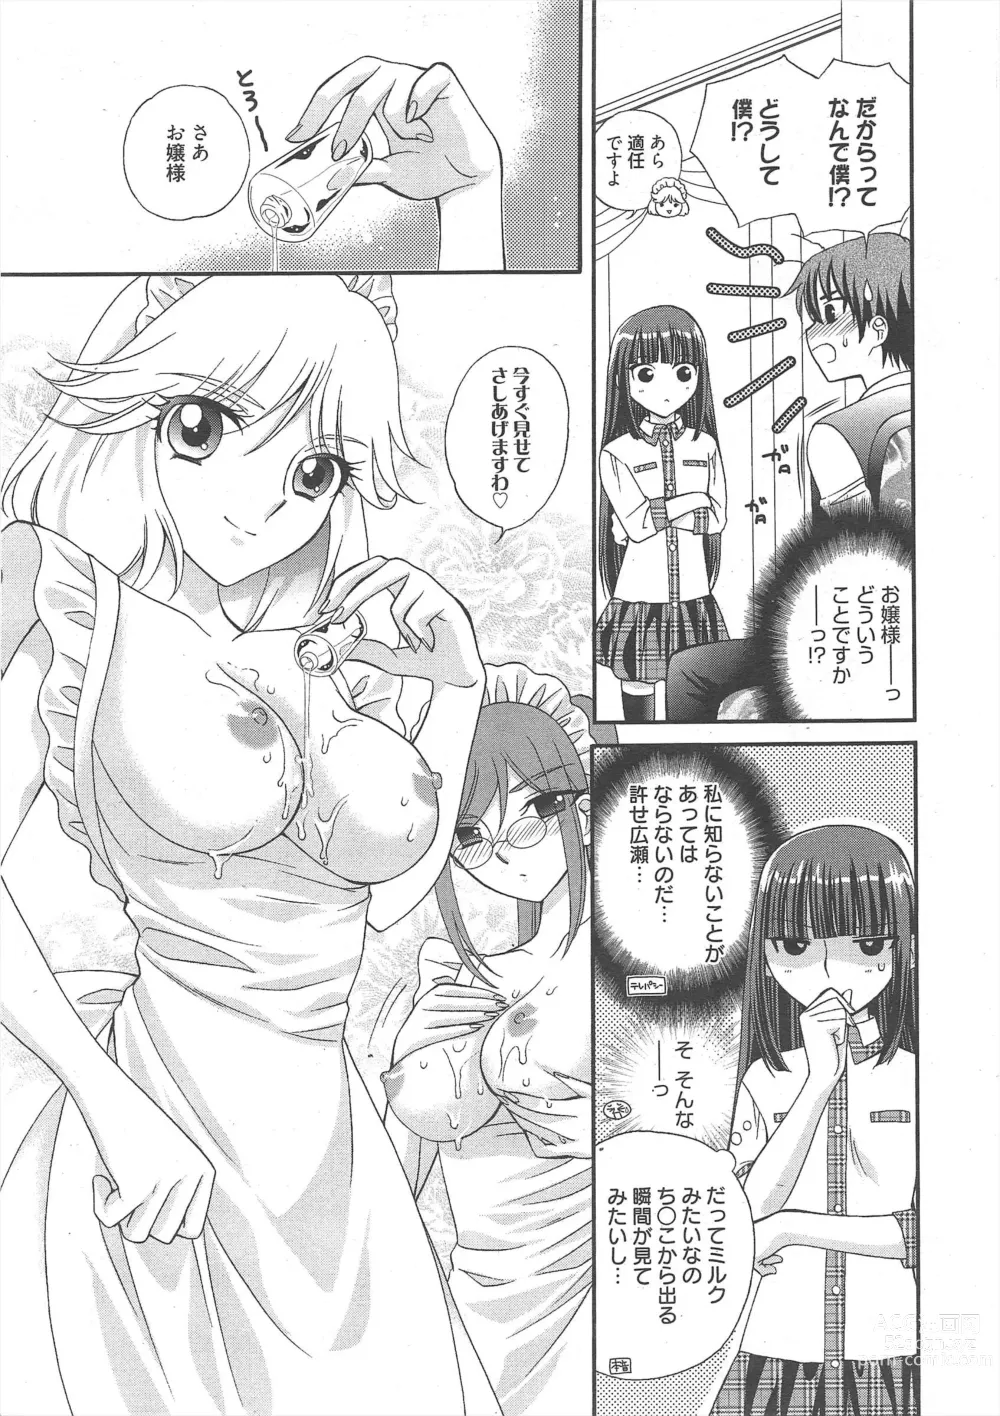 Page 13 of manga Manga Bangaichi 2012-06